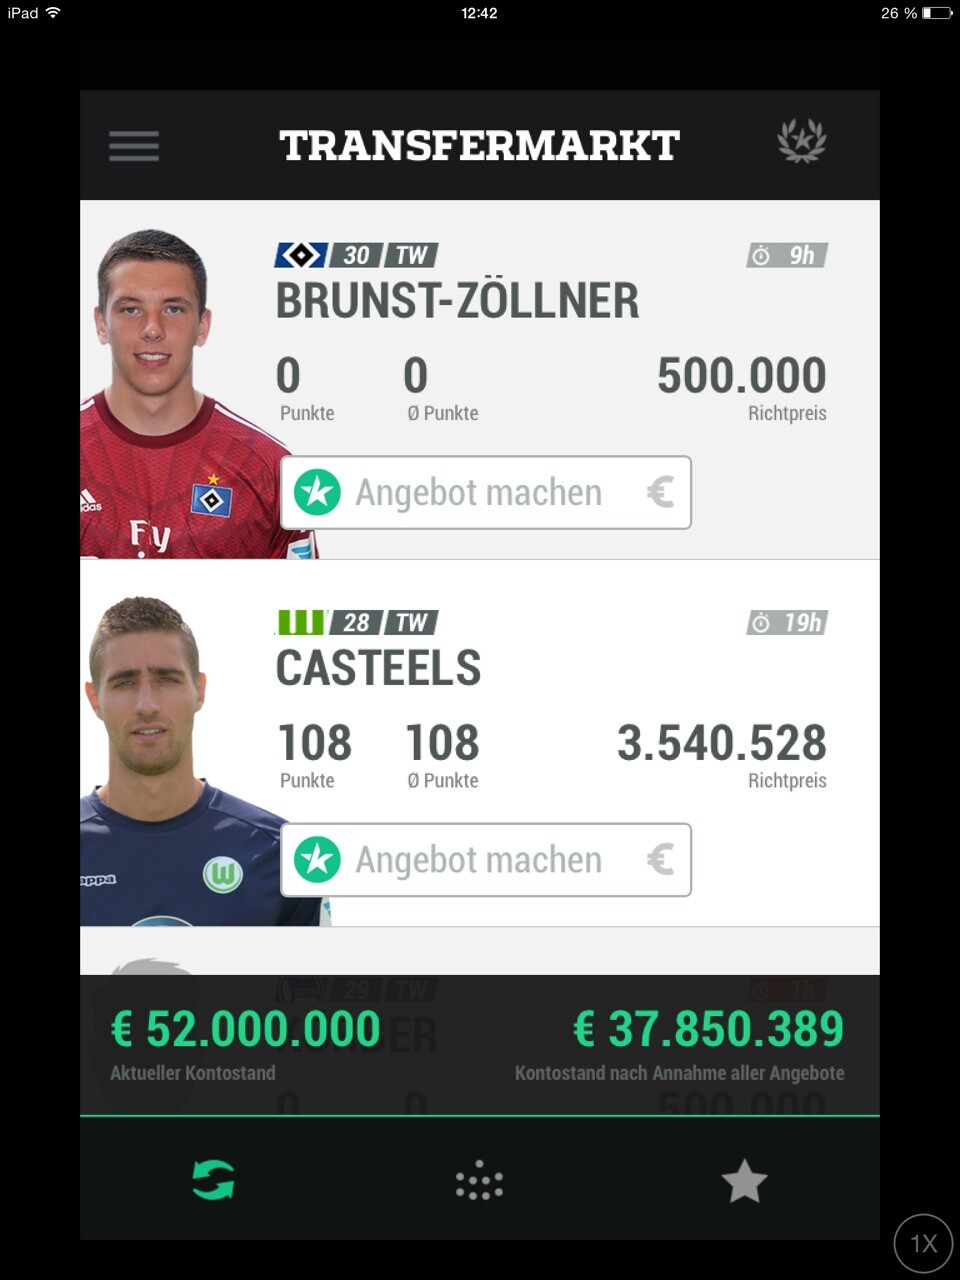 Hübsch und übersichtlich: Als Smartphone-App glänzt Kickbase mit seiner tollen Aufmachung und den Original-Fotos der bekanntesten Bundesliga-Spieler.